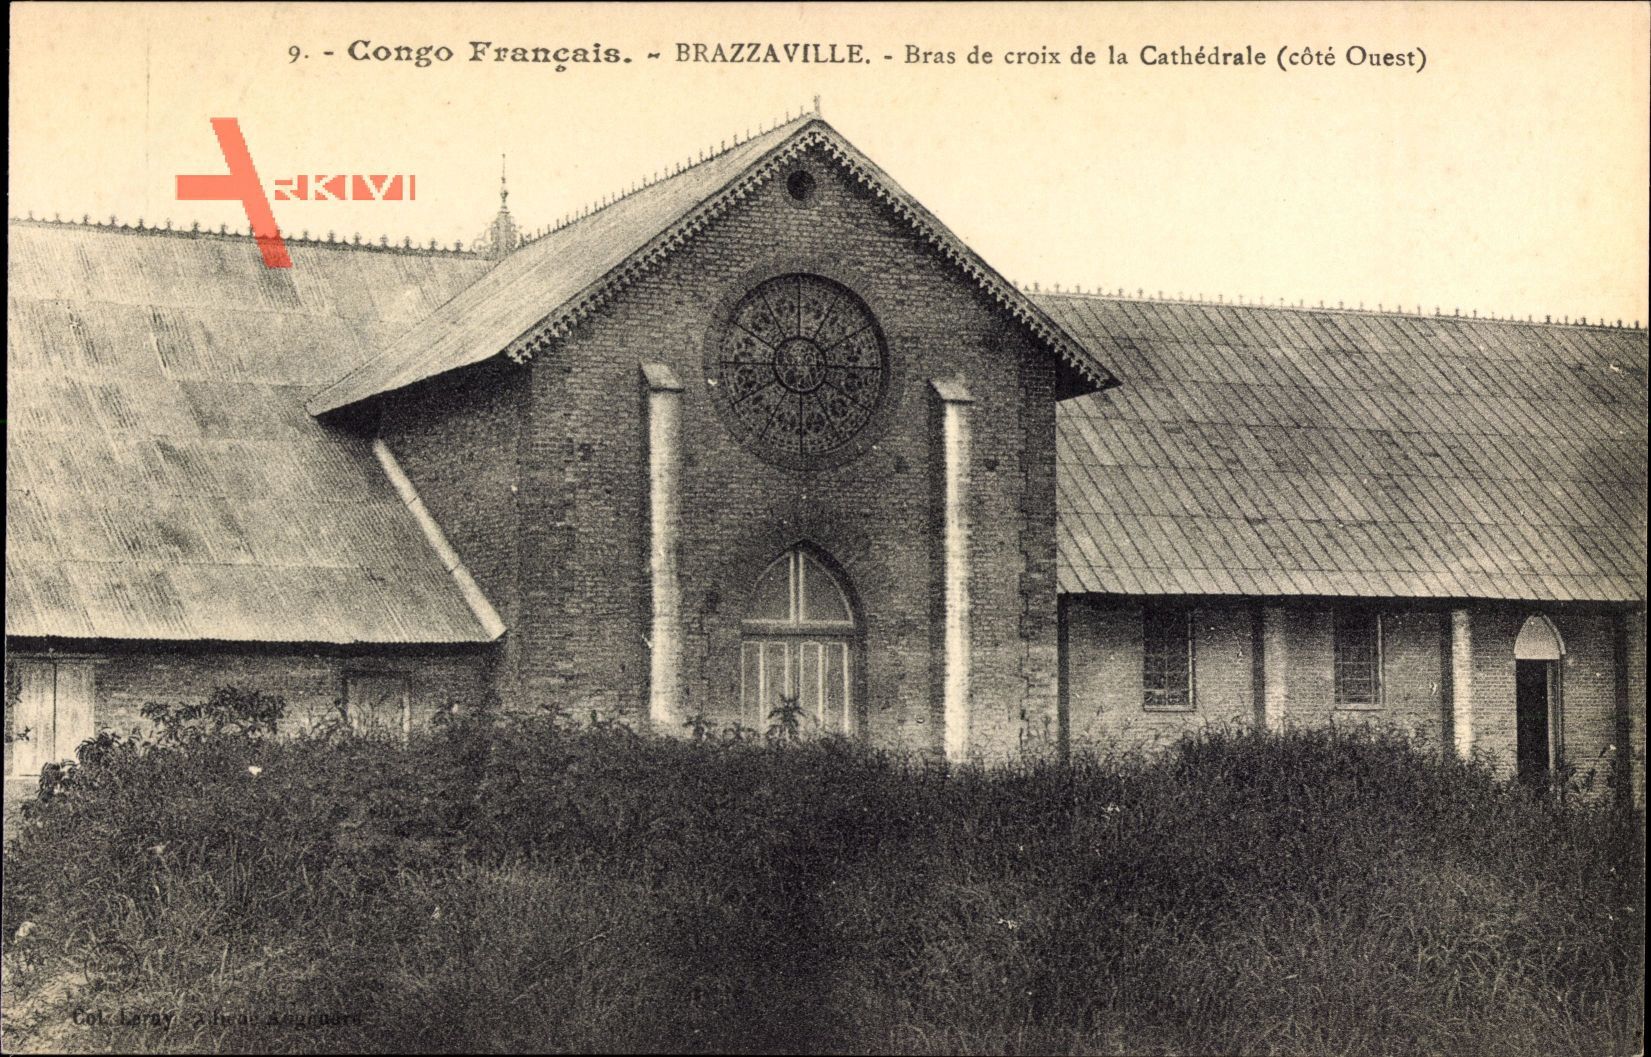 Brazzaville Franz. Kongo, Bras de croix de la Cathedrale, cote Ouest